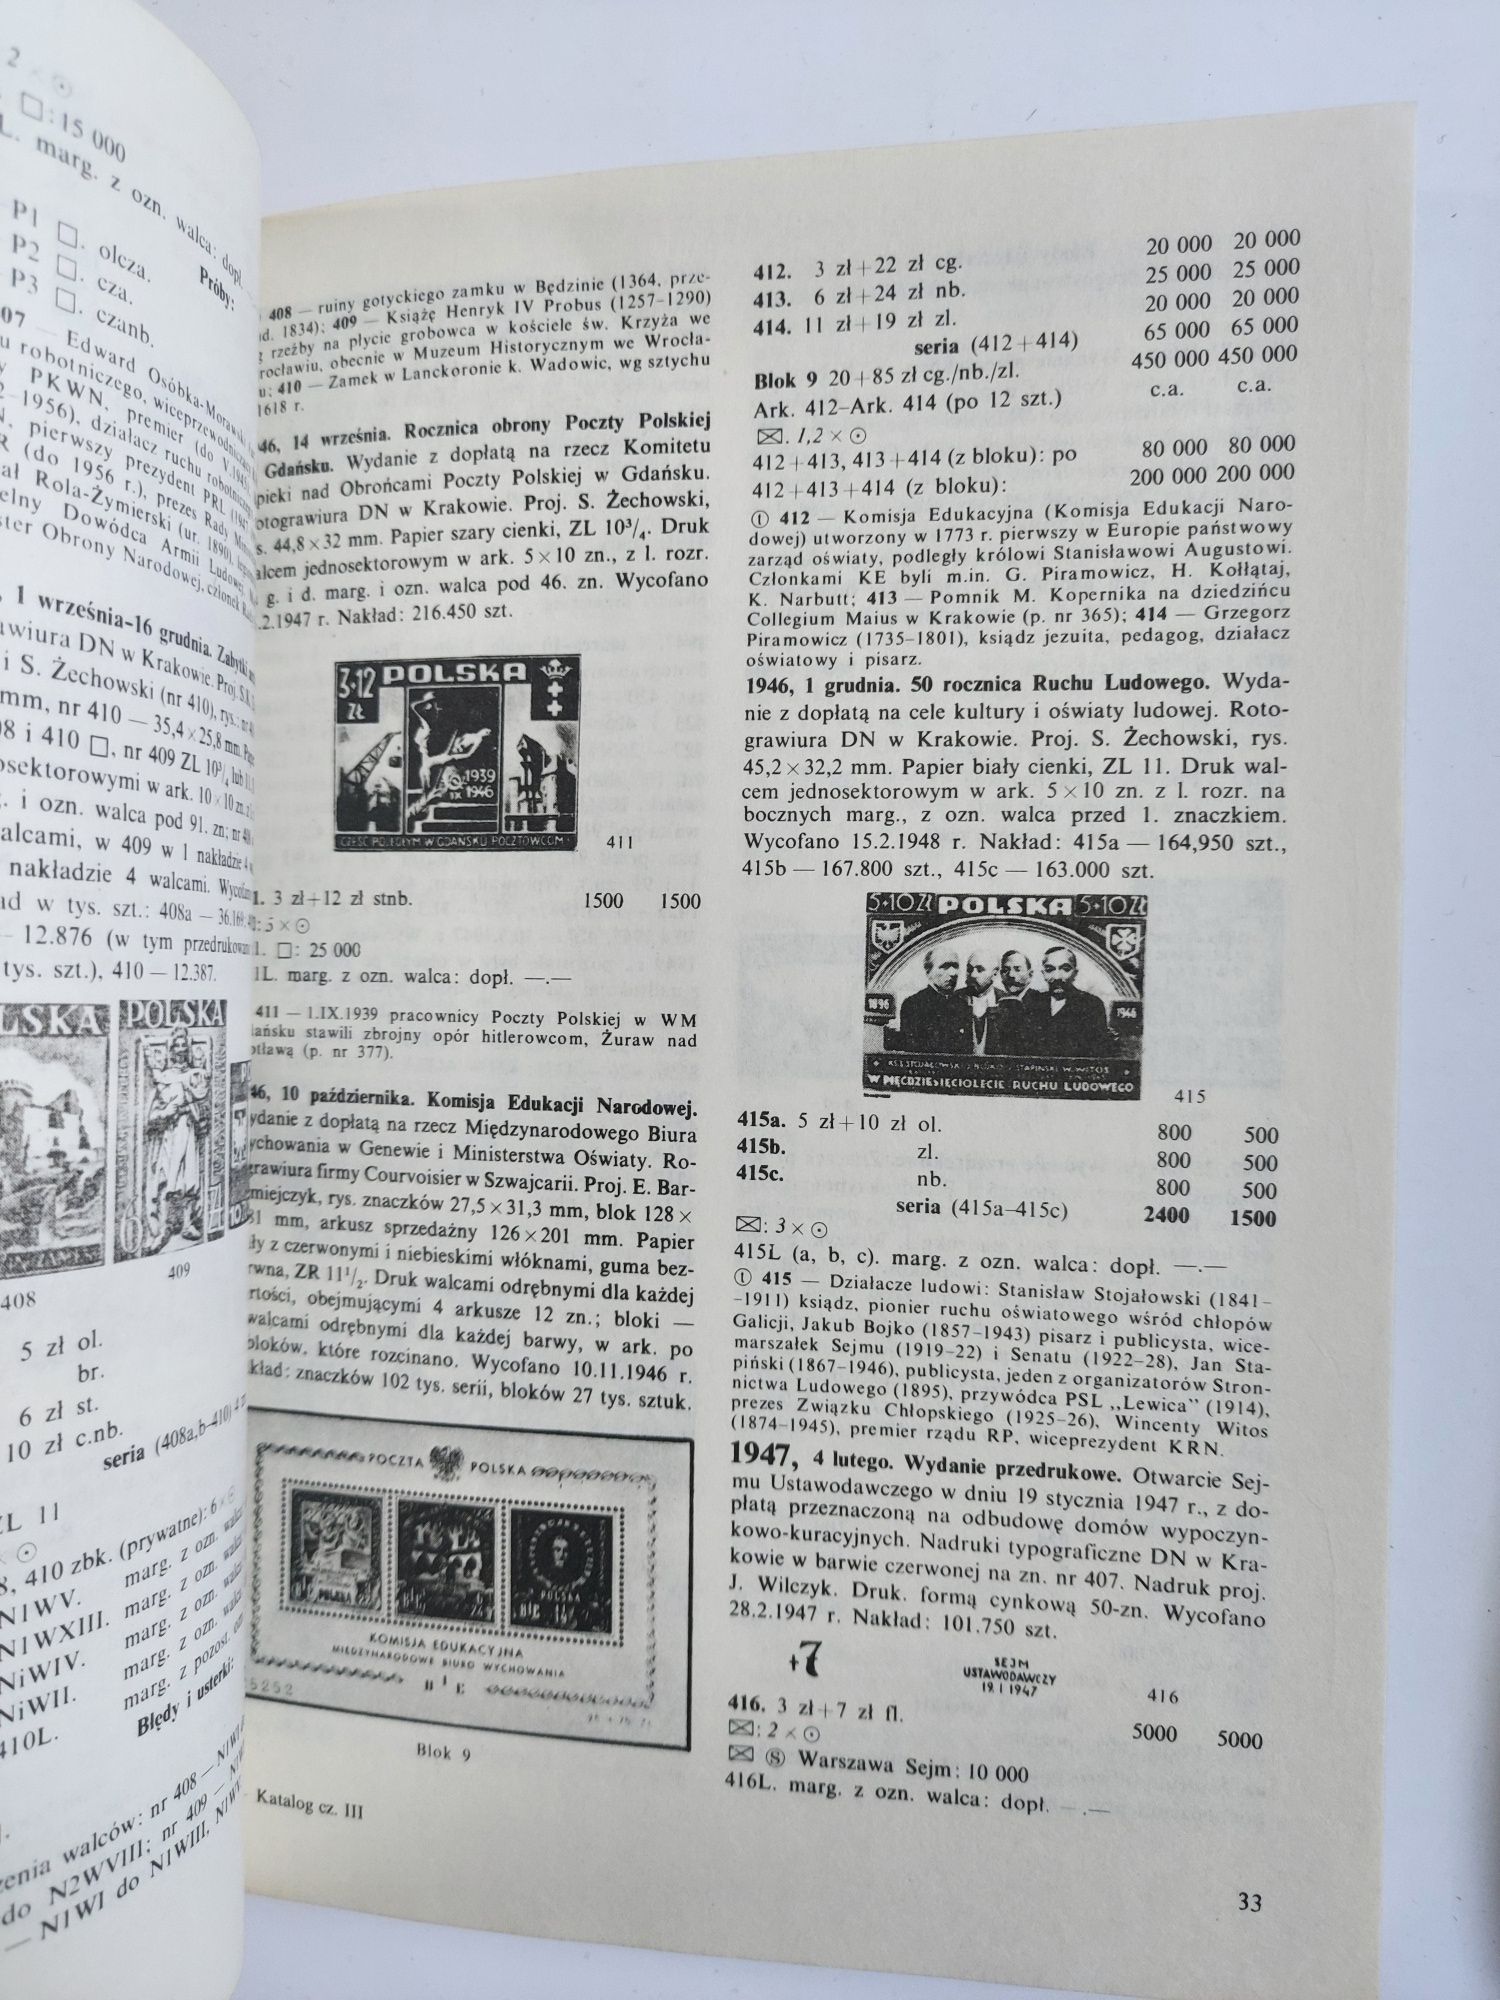 Katalog specjalizowany znaków pocztowych ziem polskich 1990